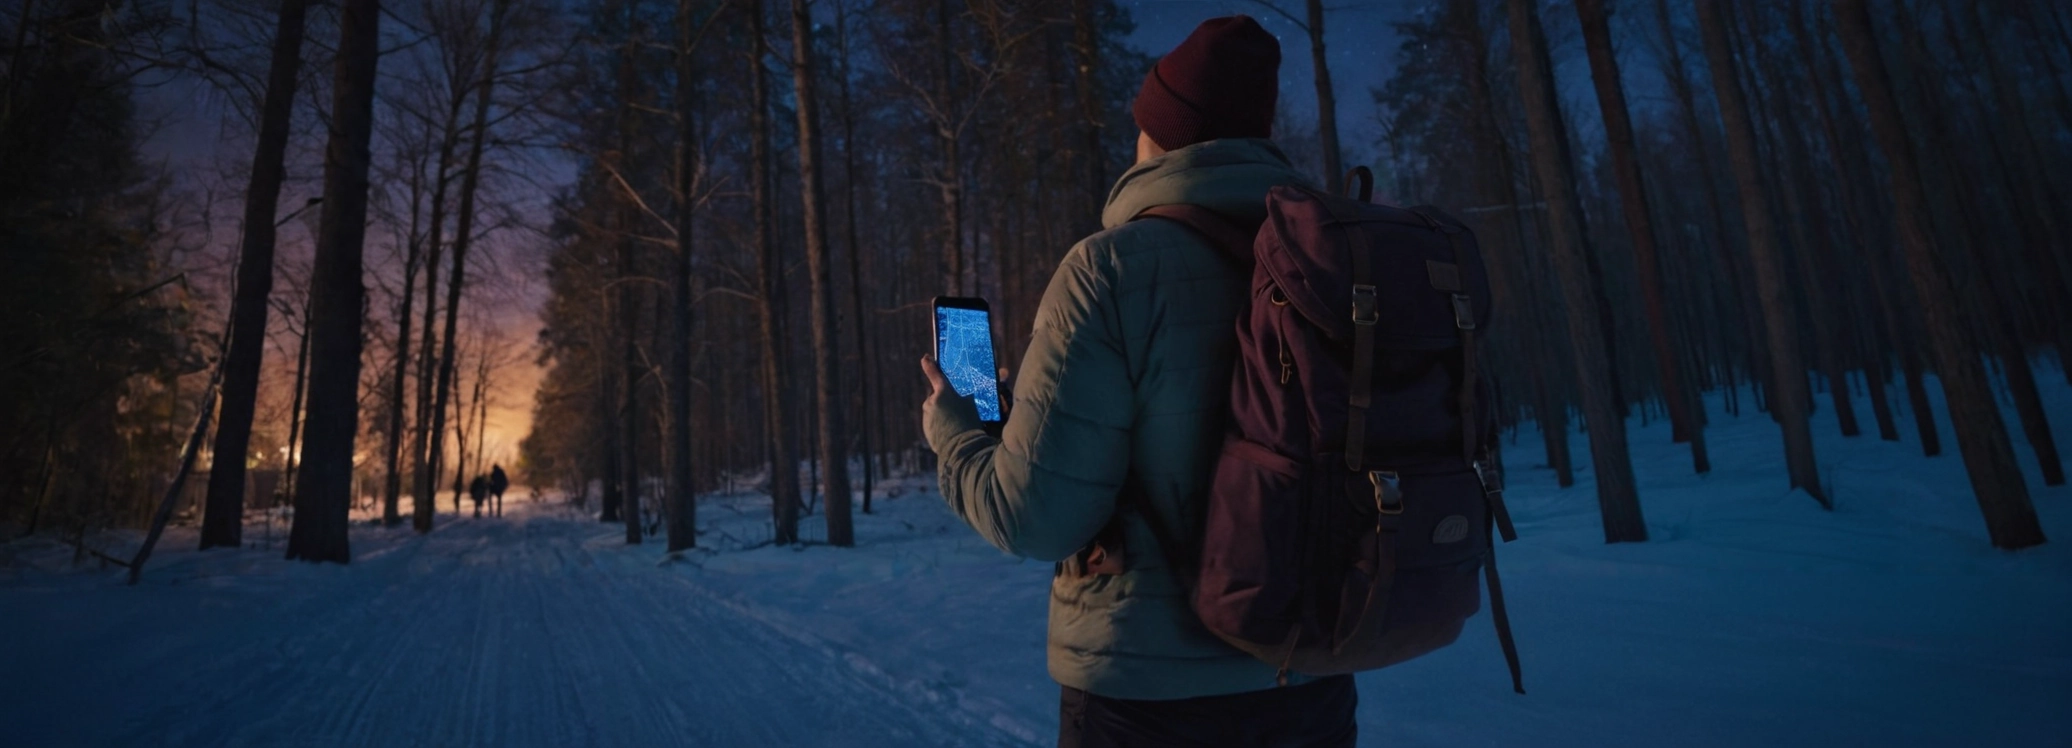 Турист ориентируется по смартфону в ночном лесу